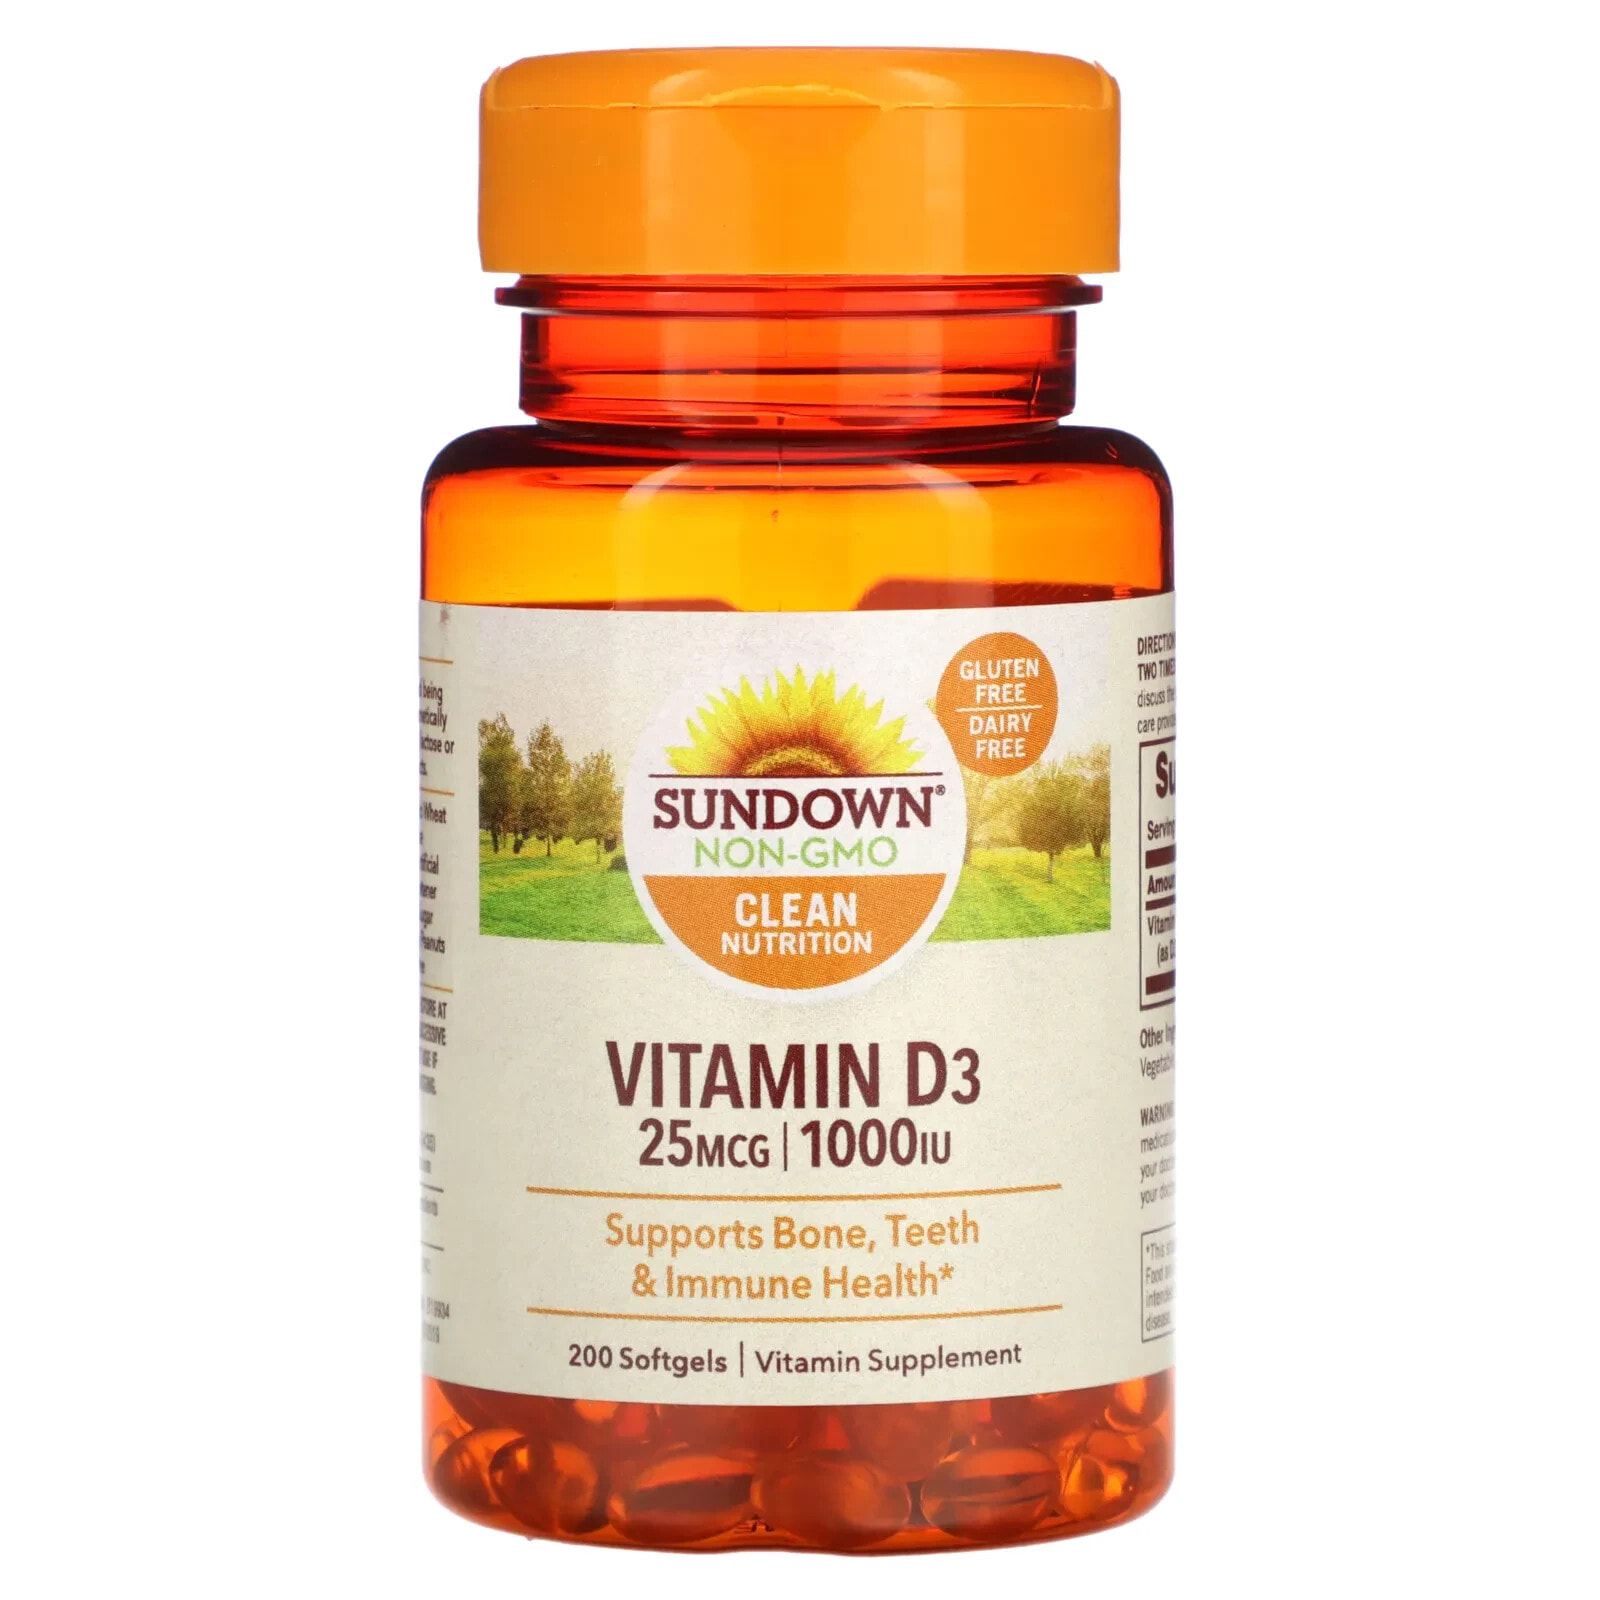 Sundown Naturals, Vitamin D3, 50 mcg (2,000 IU), 350 Softgels